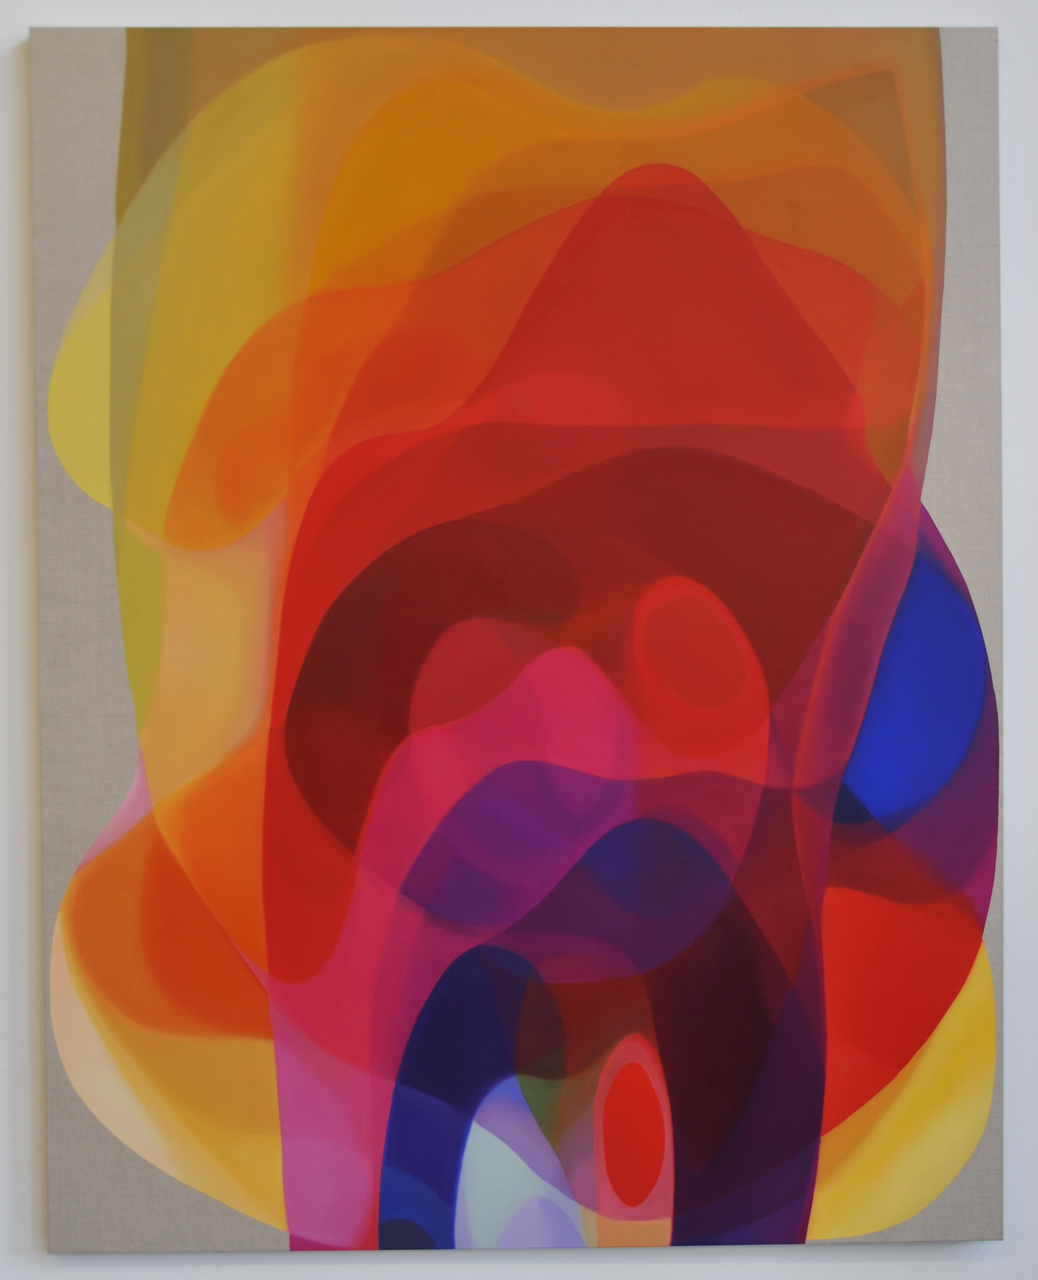   JOHN YOUNG   Veiled Spectrum IV   2014   Oil on linen   190 x 150 cm  